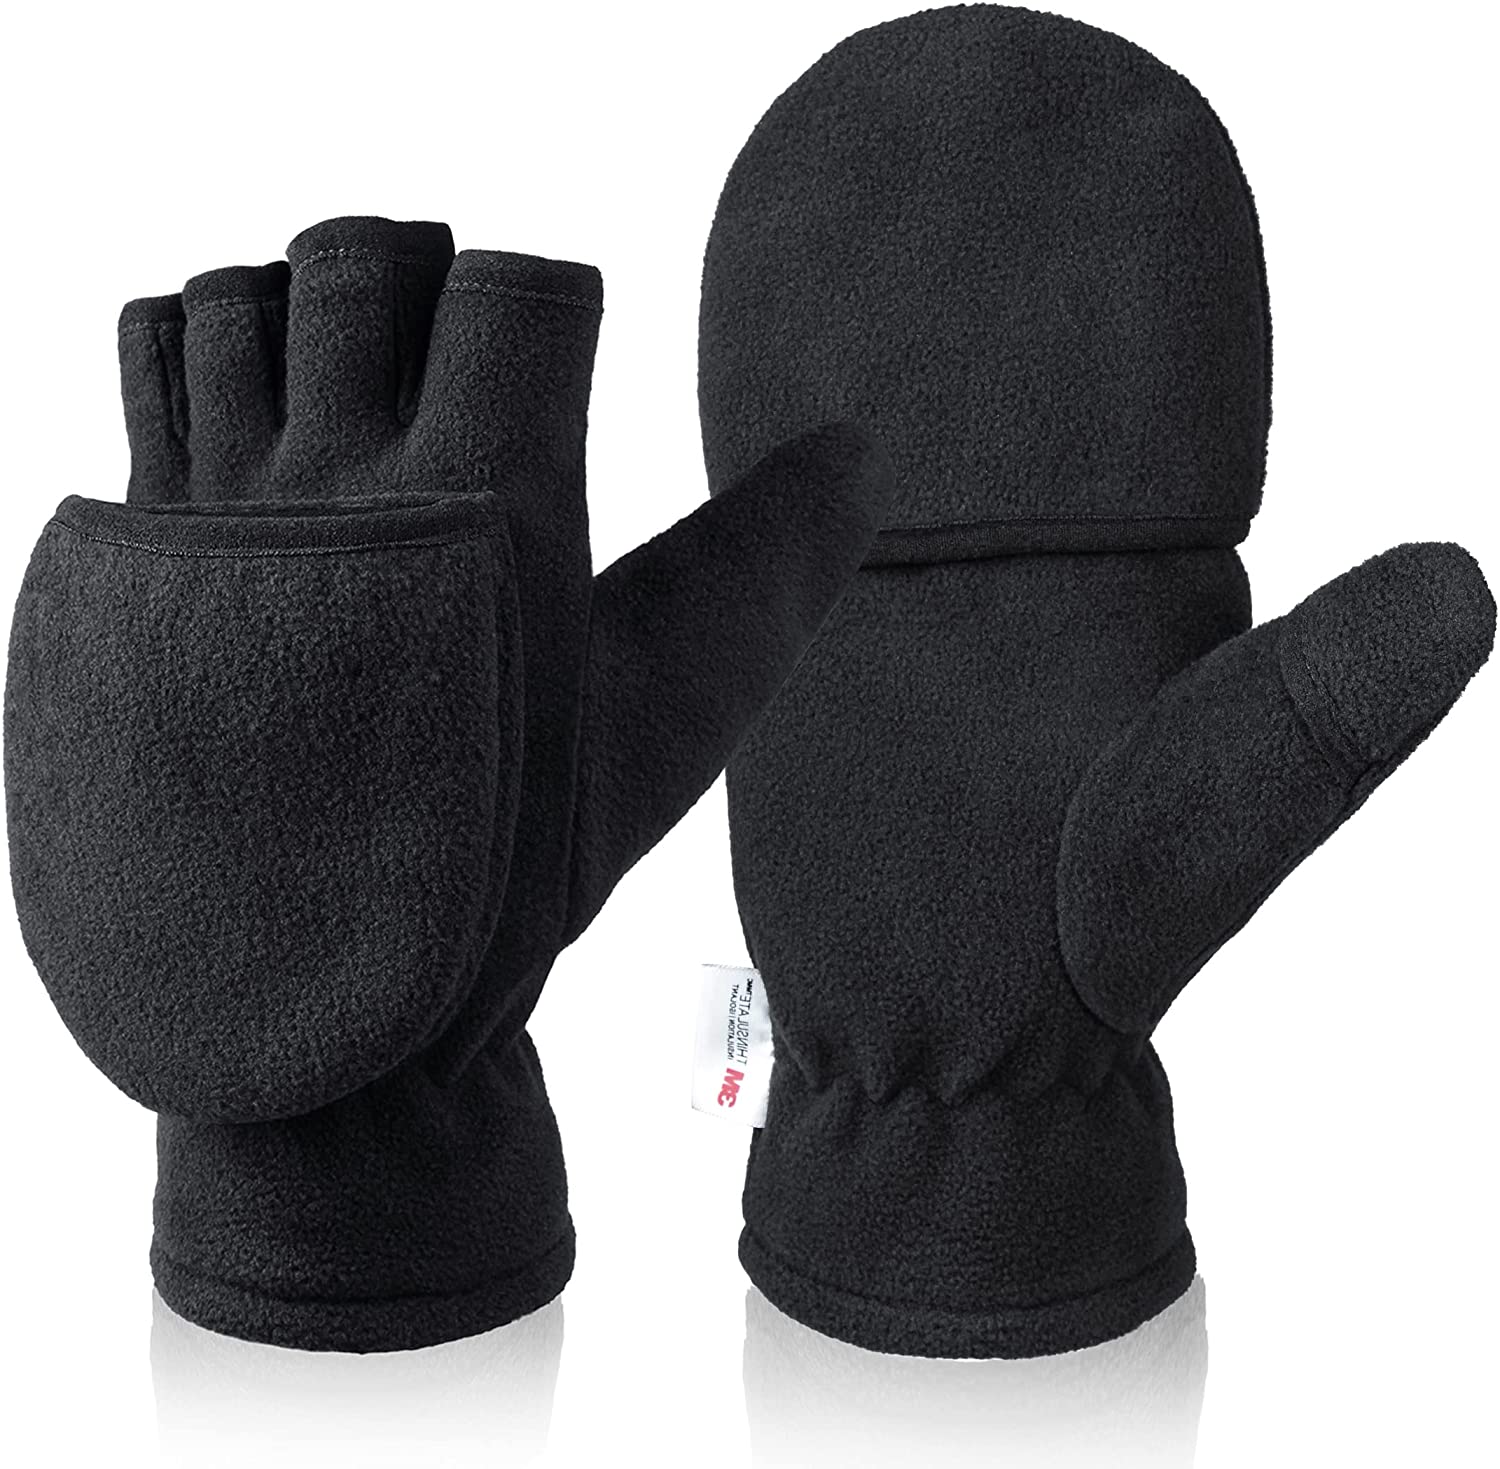 5本指全部開放できる ミトン防寒手袋 手袋 オゼロ（OZERO) メンズ 防寒 ミトン 指なし 多用途製グローブ 2WAY スマホ対応 冬 ブラック Ｓ Ｍ Ｌサイズ